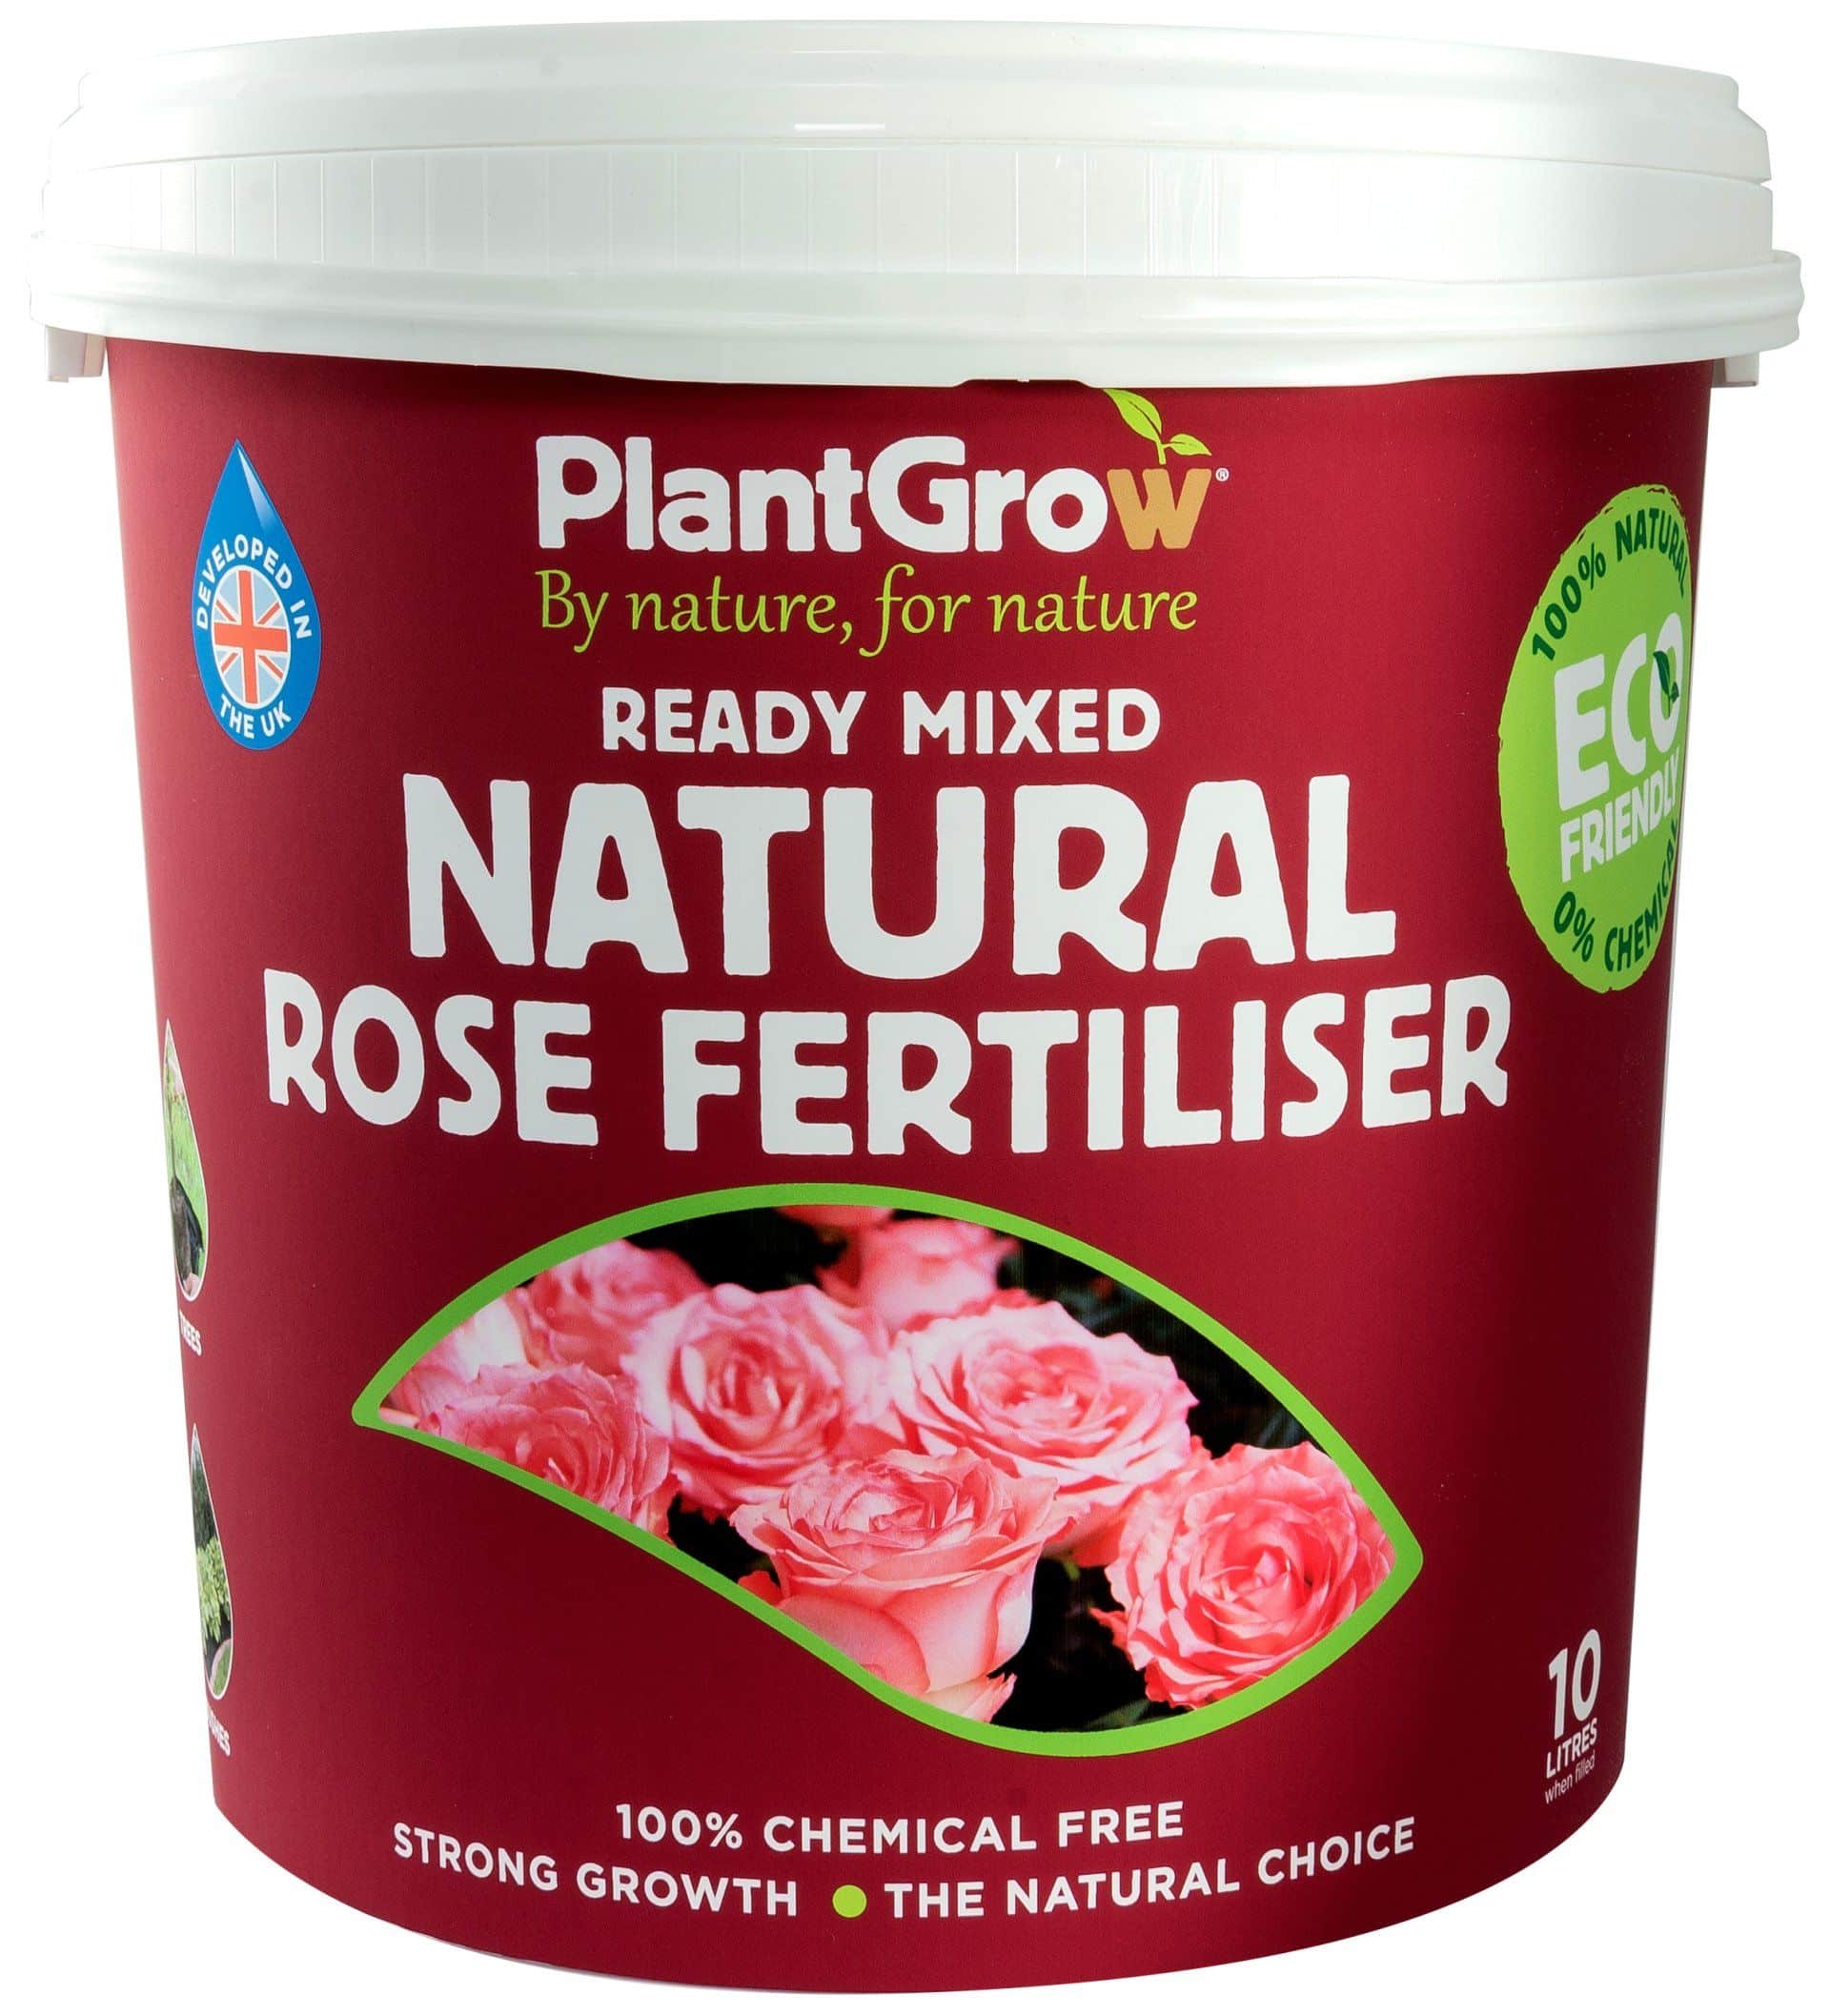 Rose fertiliser